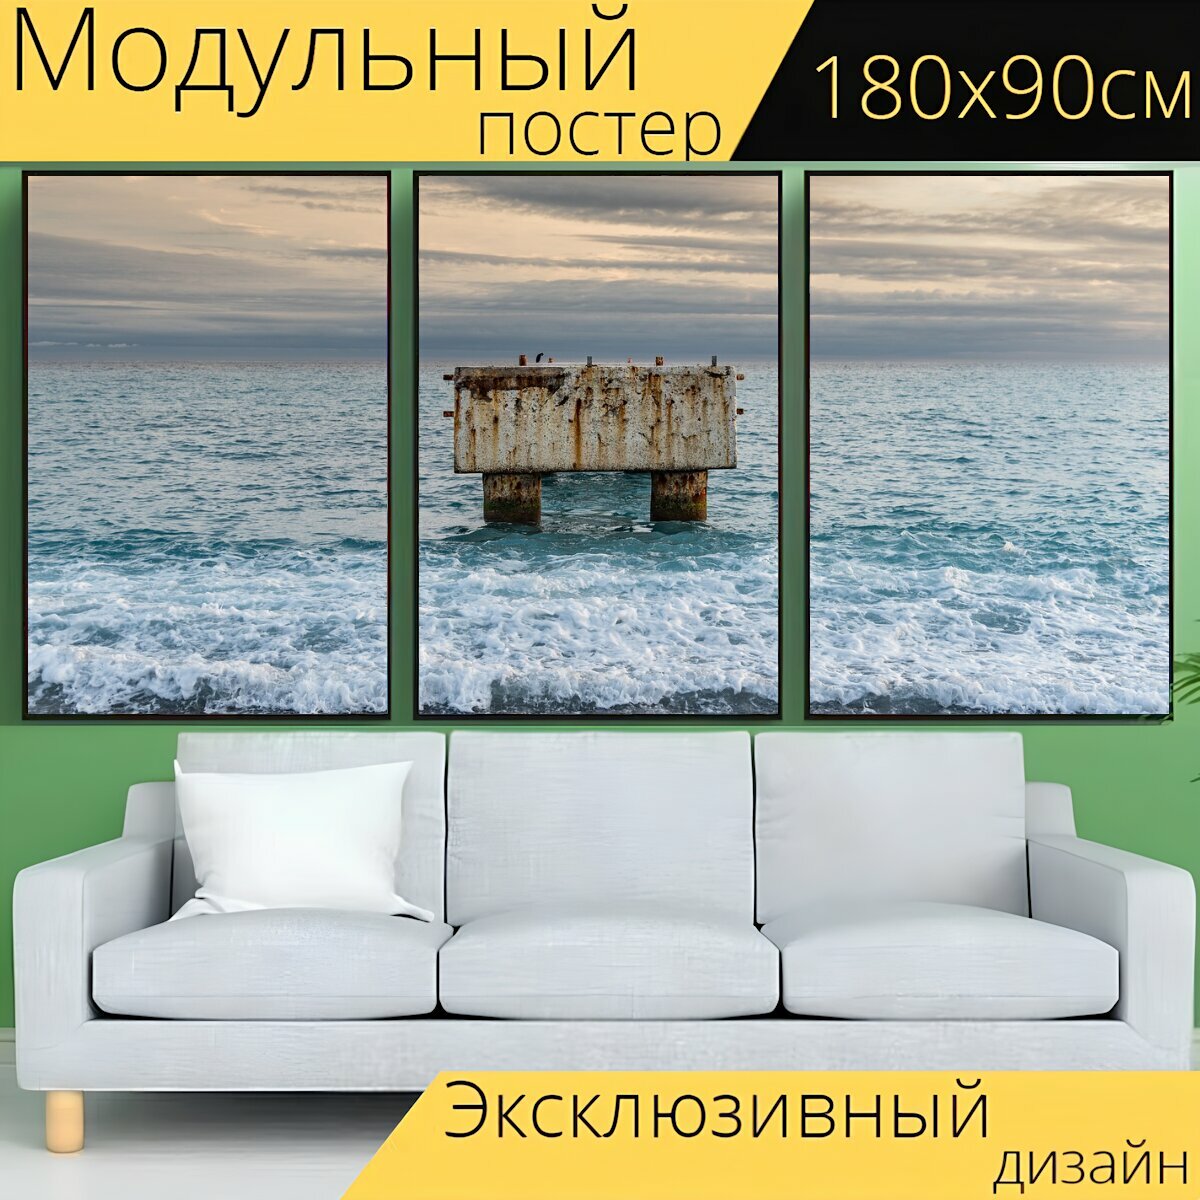 Модульный постер "Море, морской берег, отлично" 180 x 90 см. для интерьера